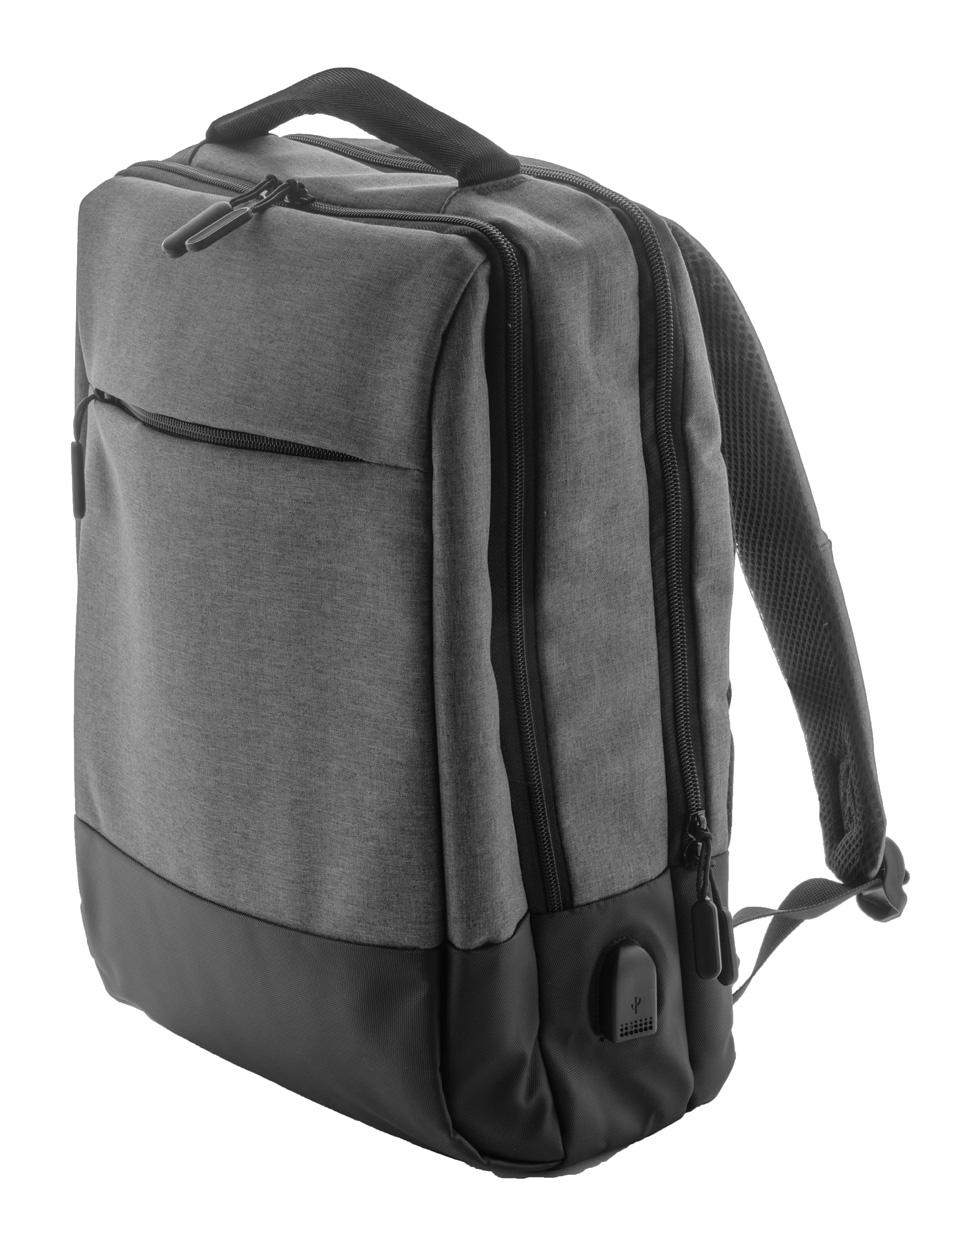 Polyesterový městský batoh BEZOS s prostorem na notebook